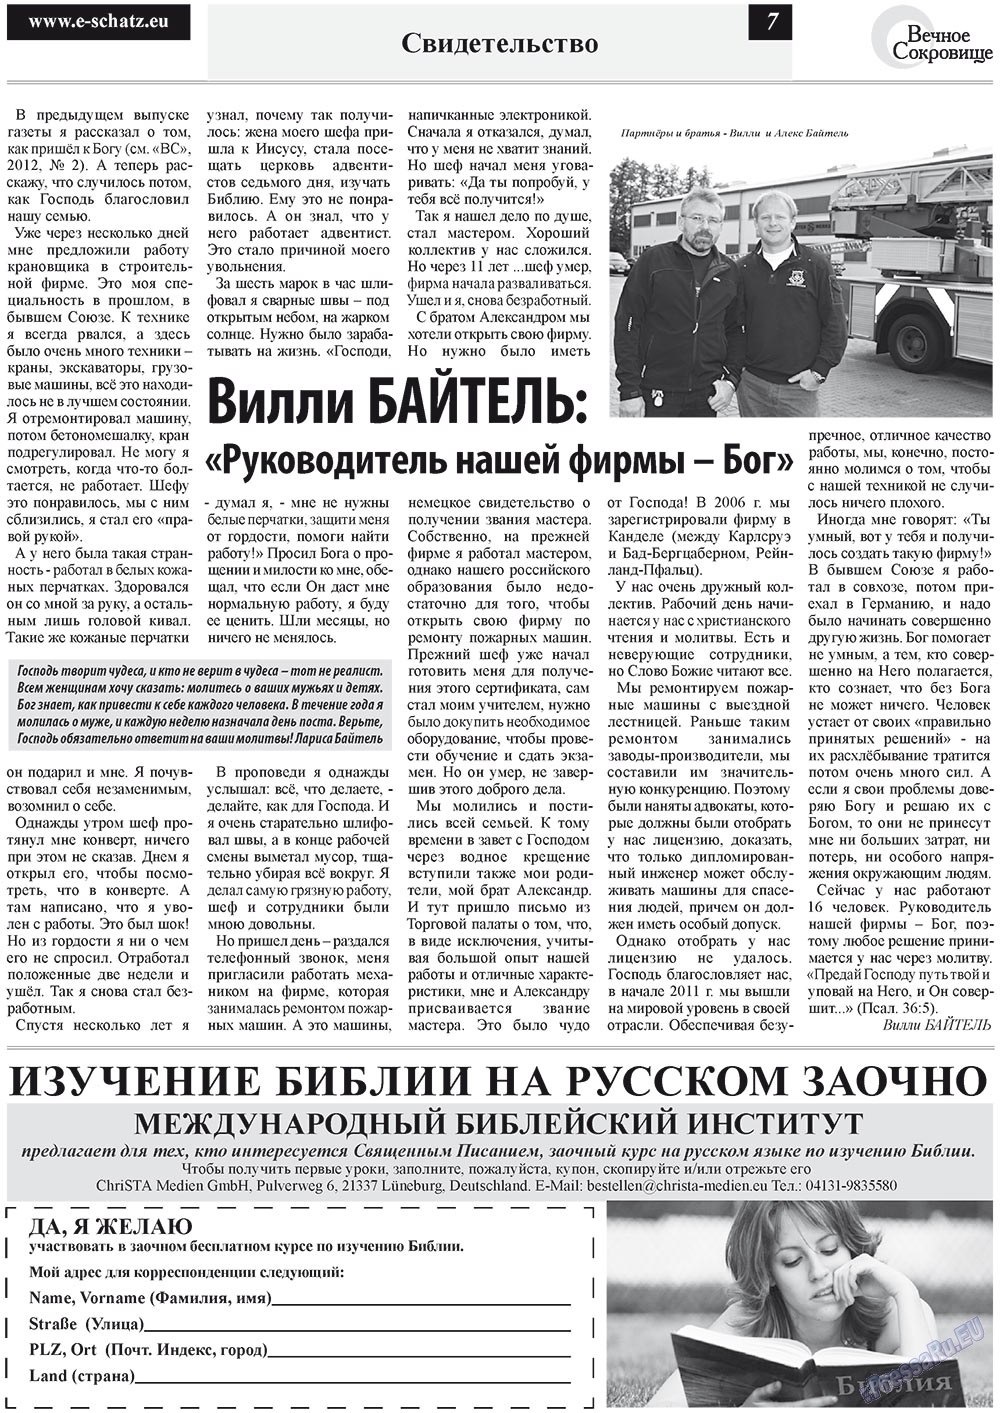 Вечное сокровище (газета). 2012 год, номер 3, стр. 7